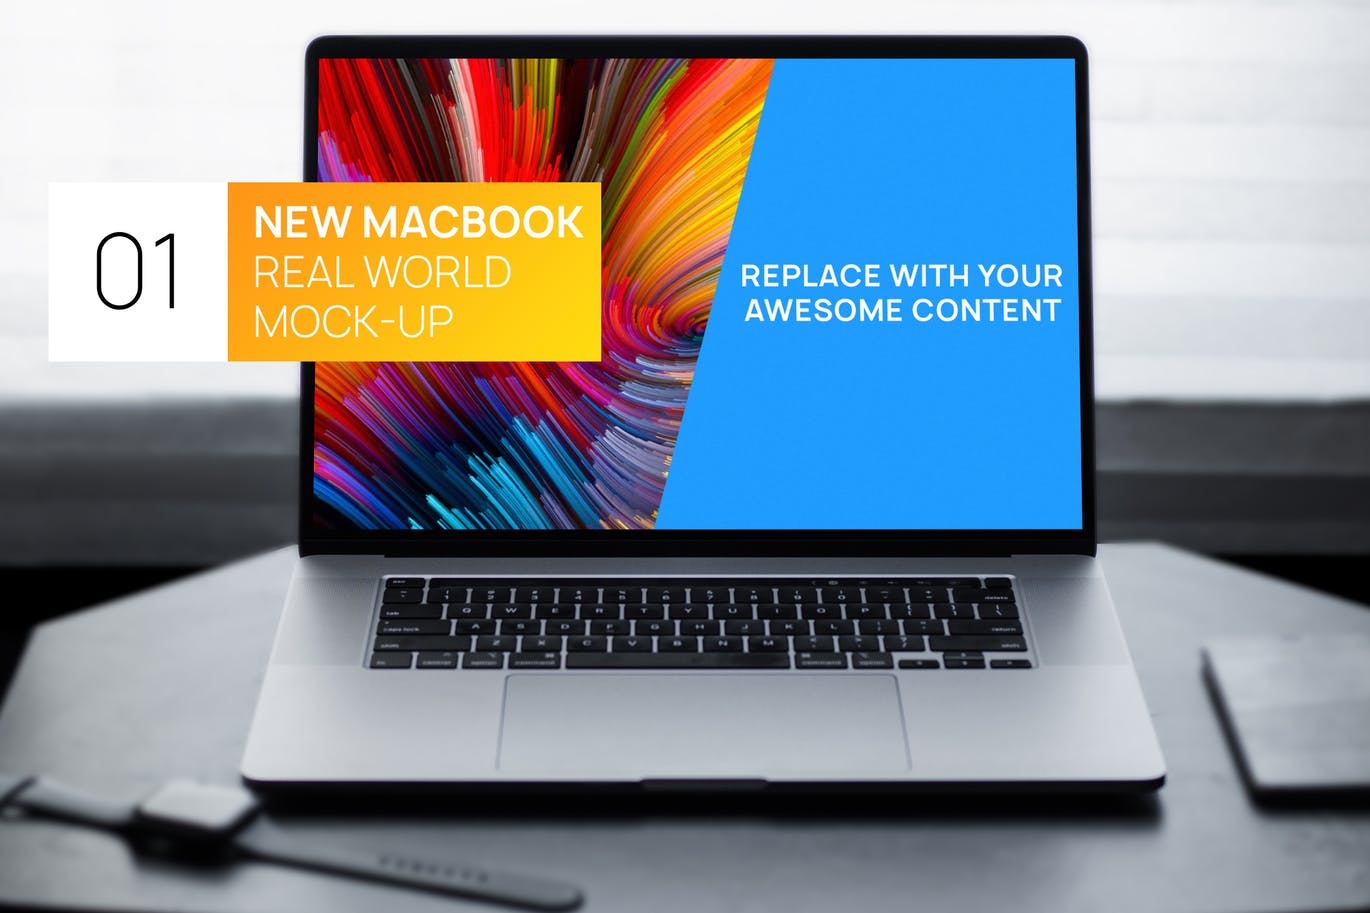 简约风格灰黑场景MacBook电脑屏幕演示蚂蚁素材精选样机 New MacBook Touchbar Dark Photo Real World Mock-up插图